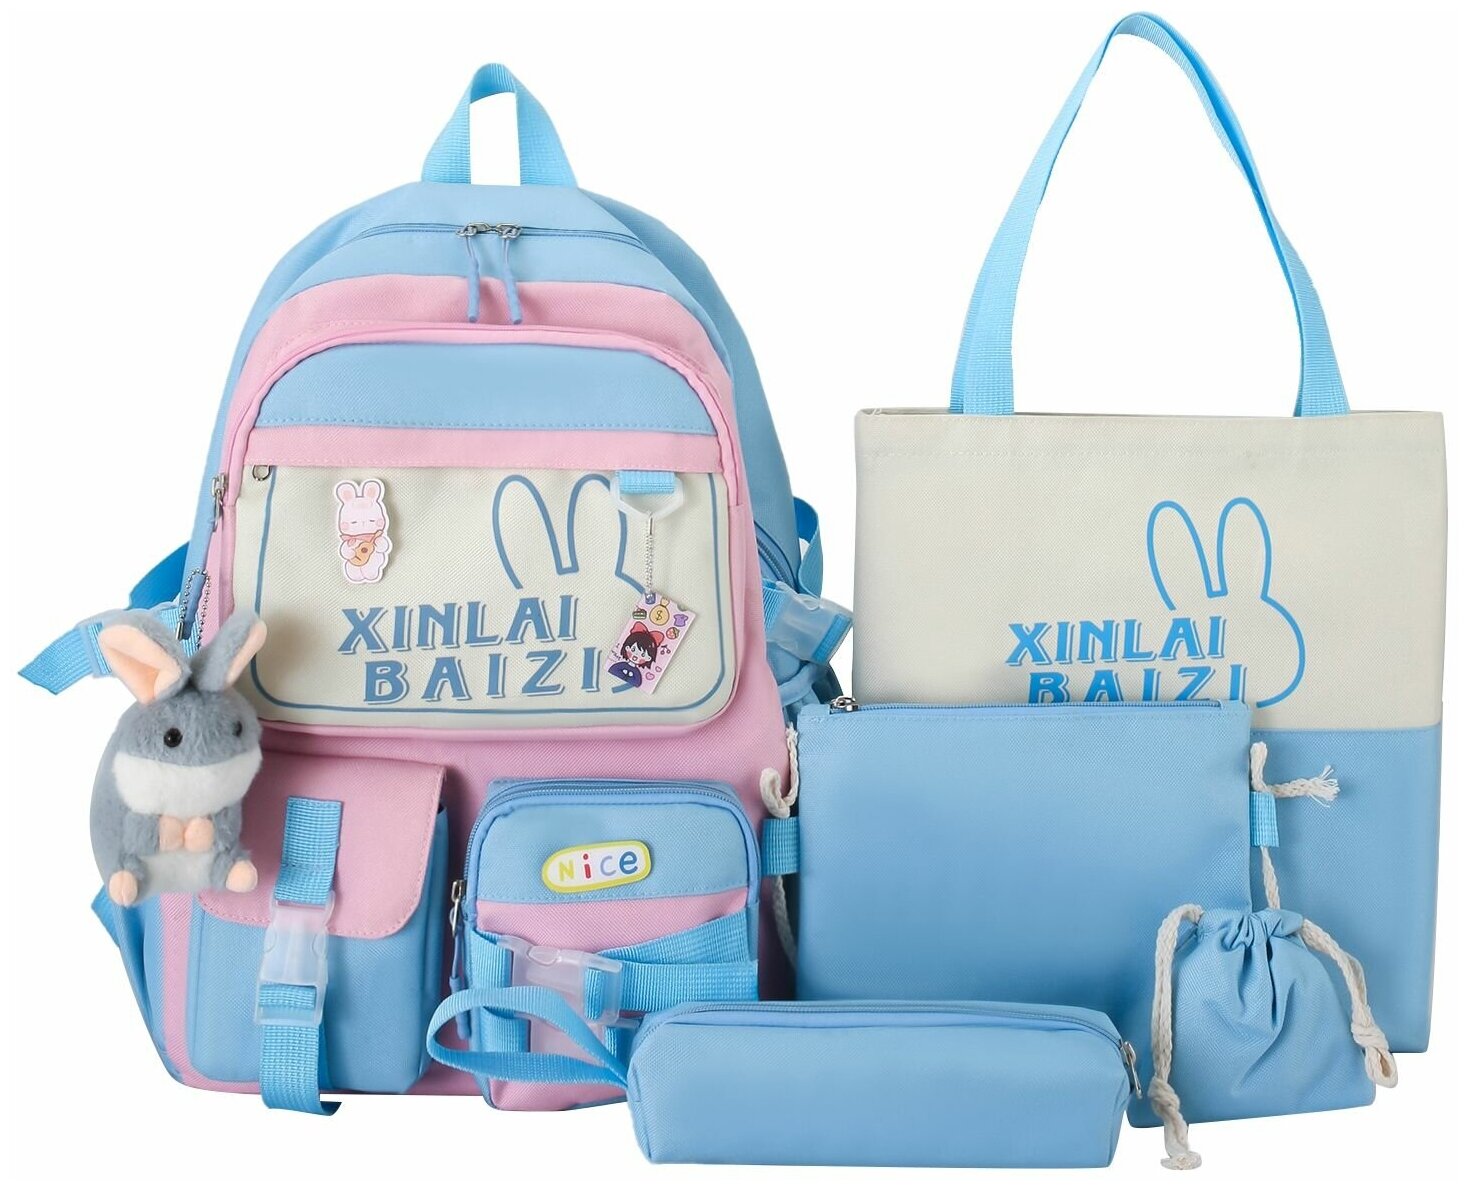 Рюкзак для девочки с комплектом 5 в 1 /Детский пенал, сумки, рюкзак кошелек 5 в 1 для подростков девочек и для прогулки — купить в интернет-магазине по низкой цене на Яндекс Маркете